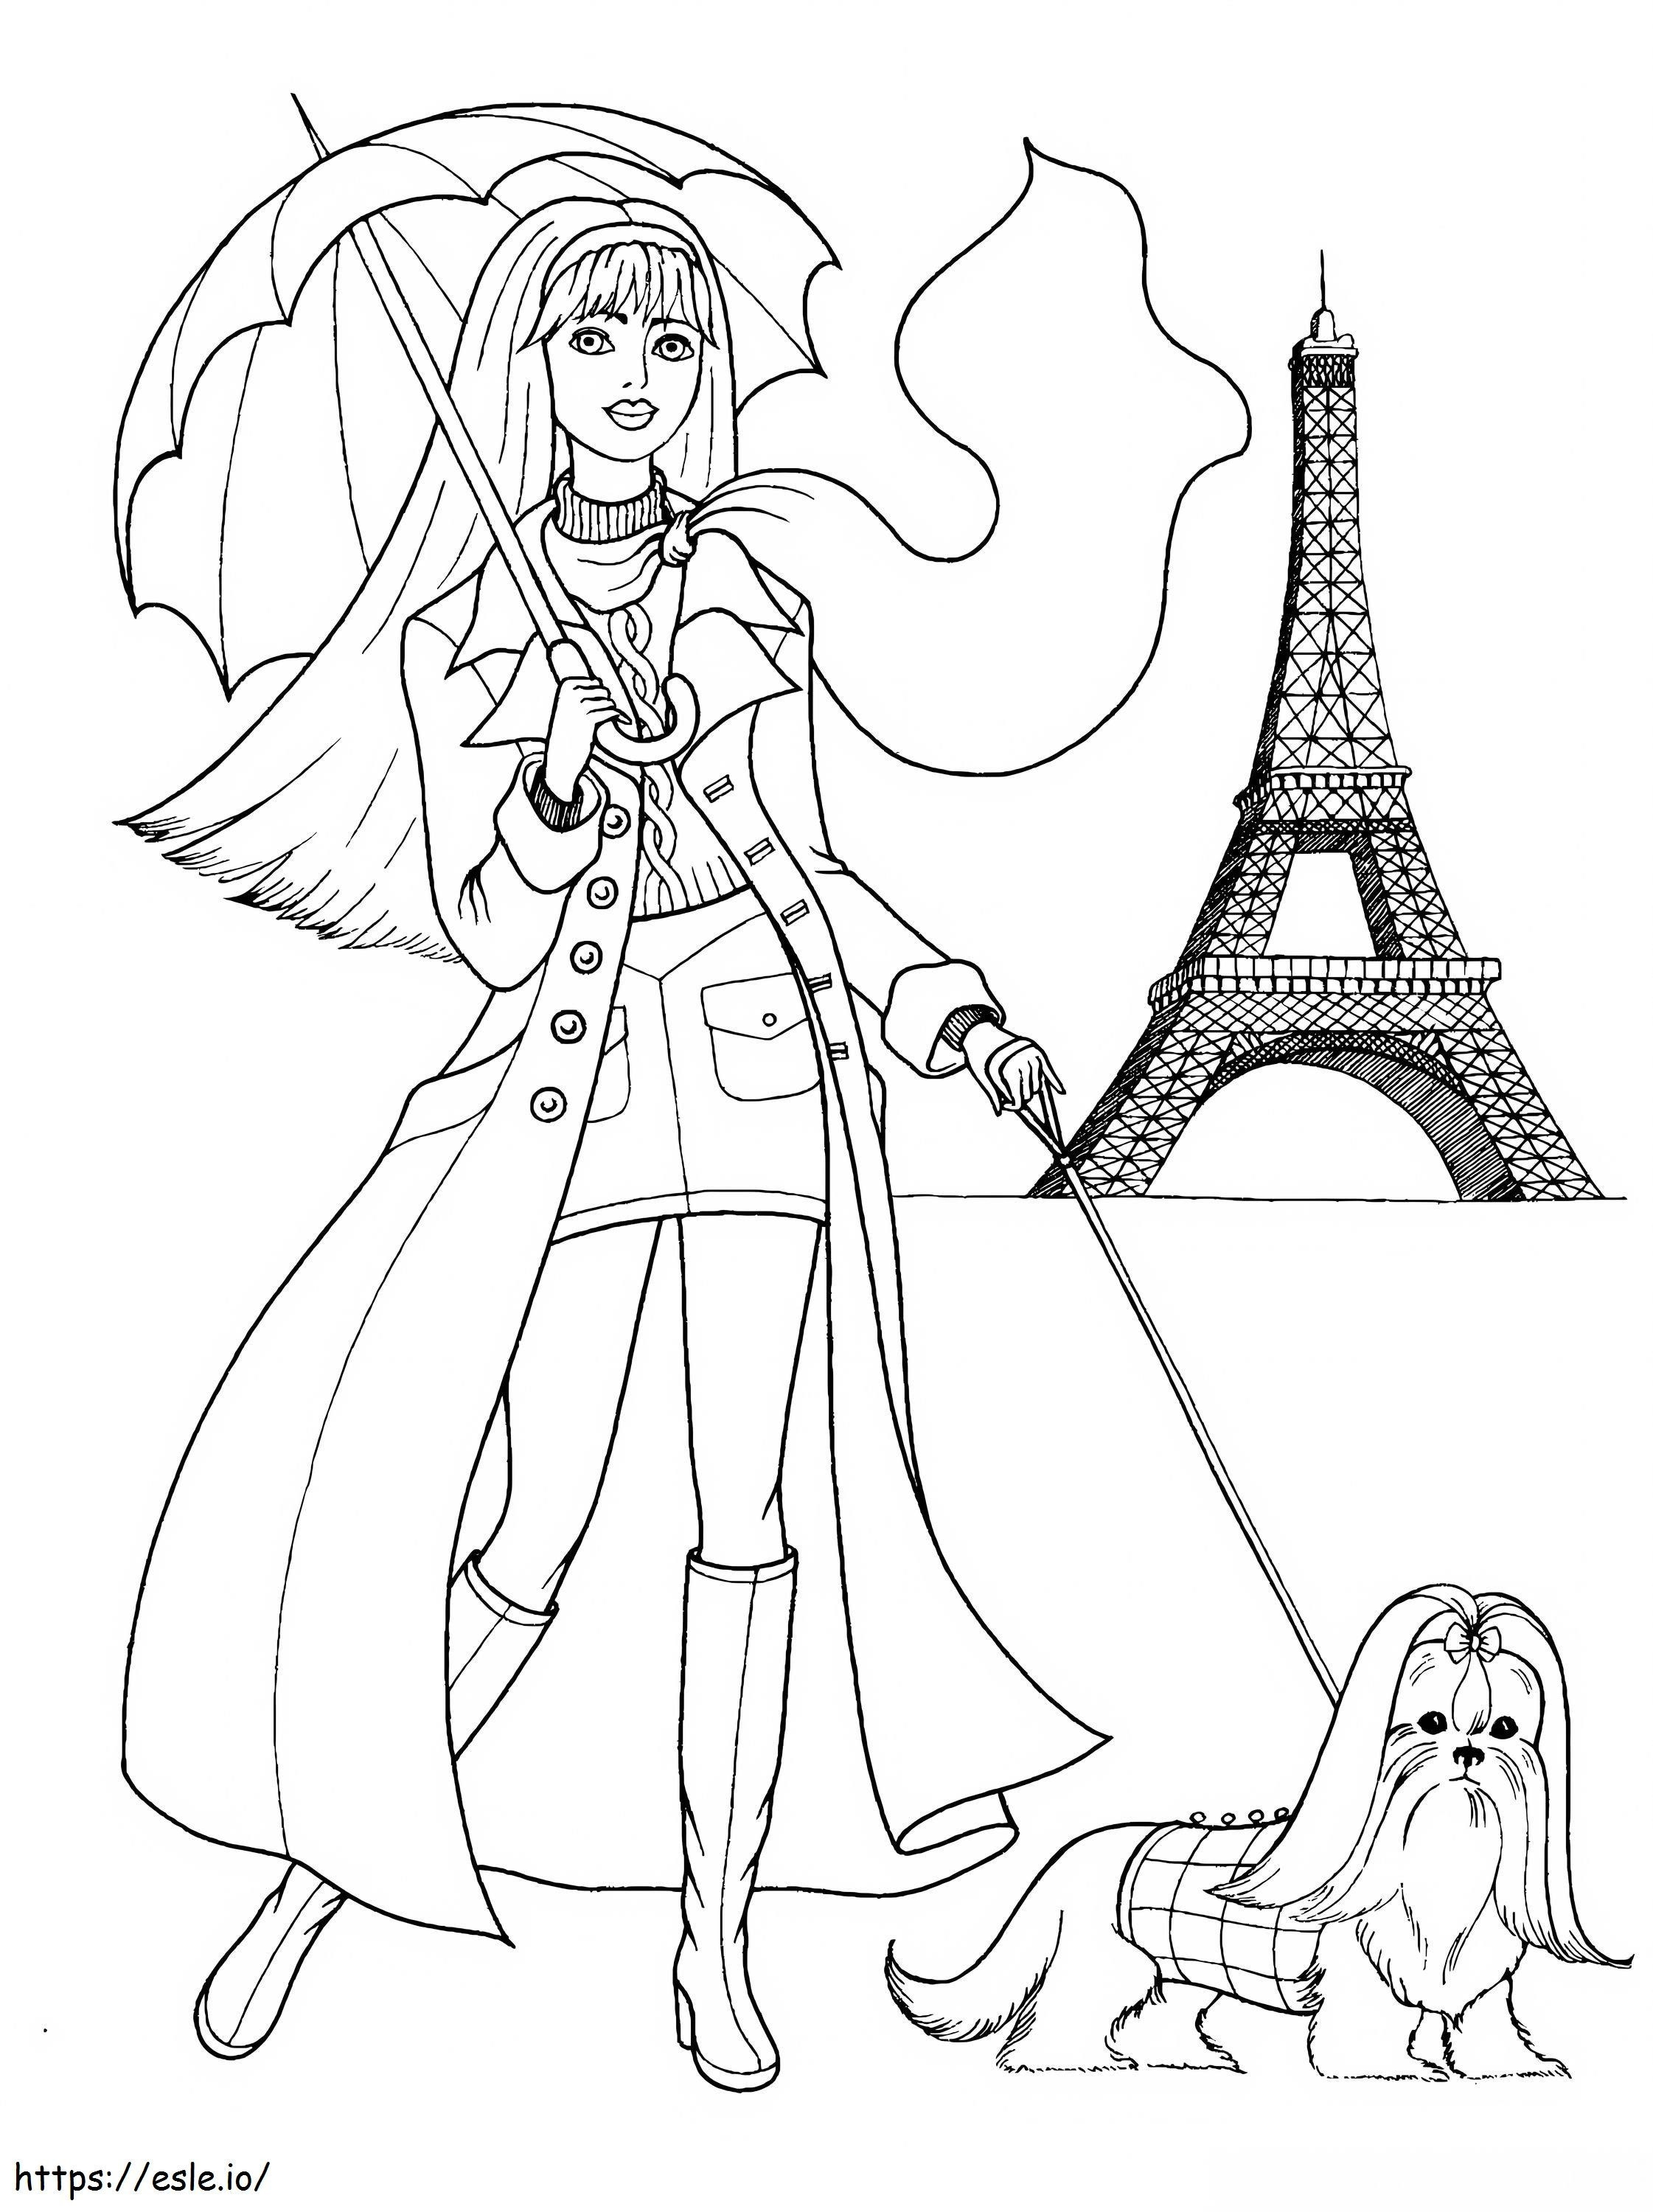 La ragazza che porta a spasso il cane e la Torre Eiffel a Parigi da colorare